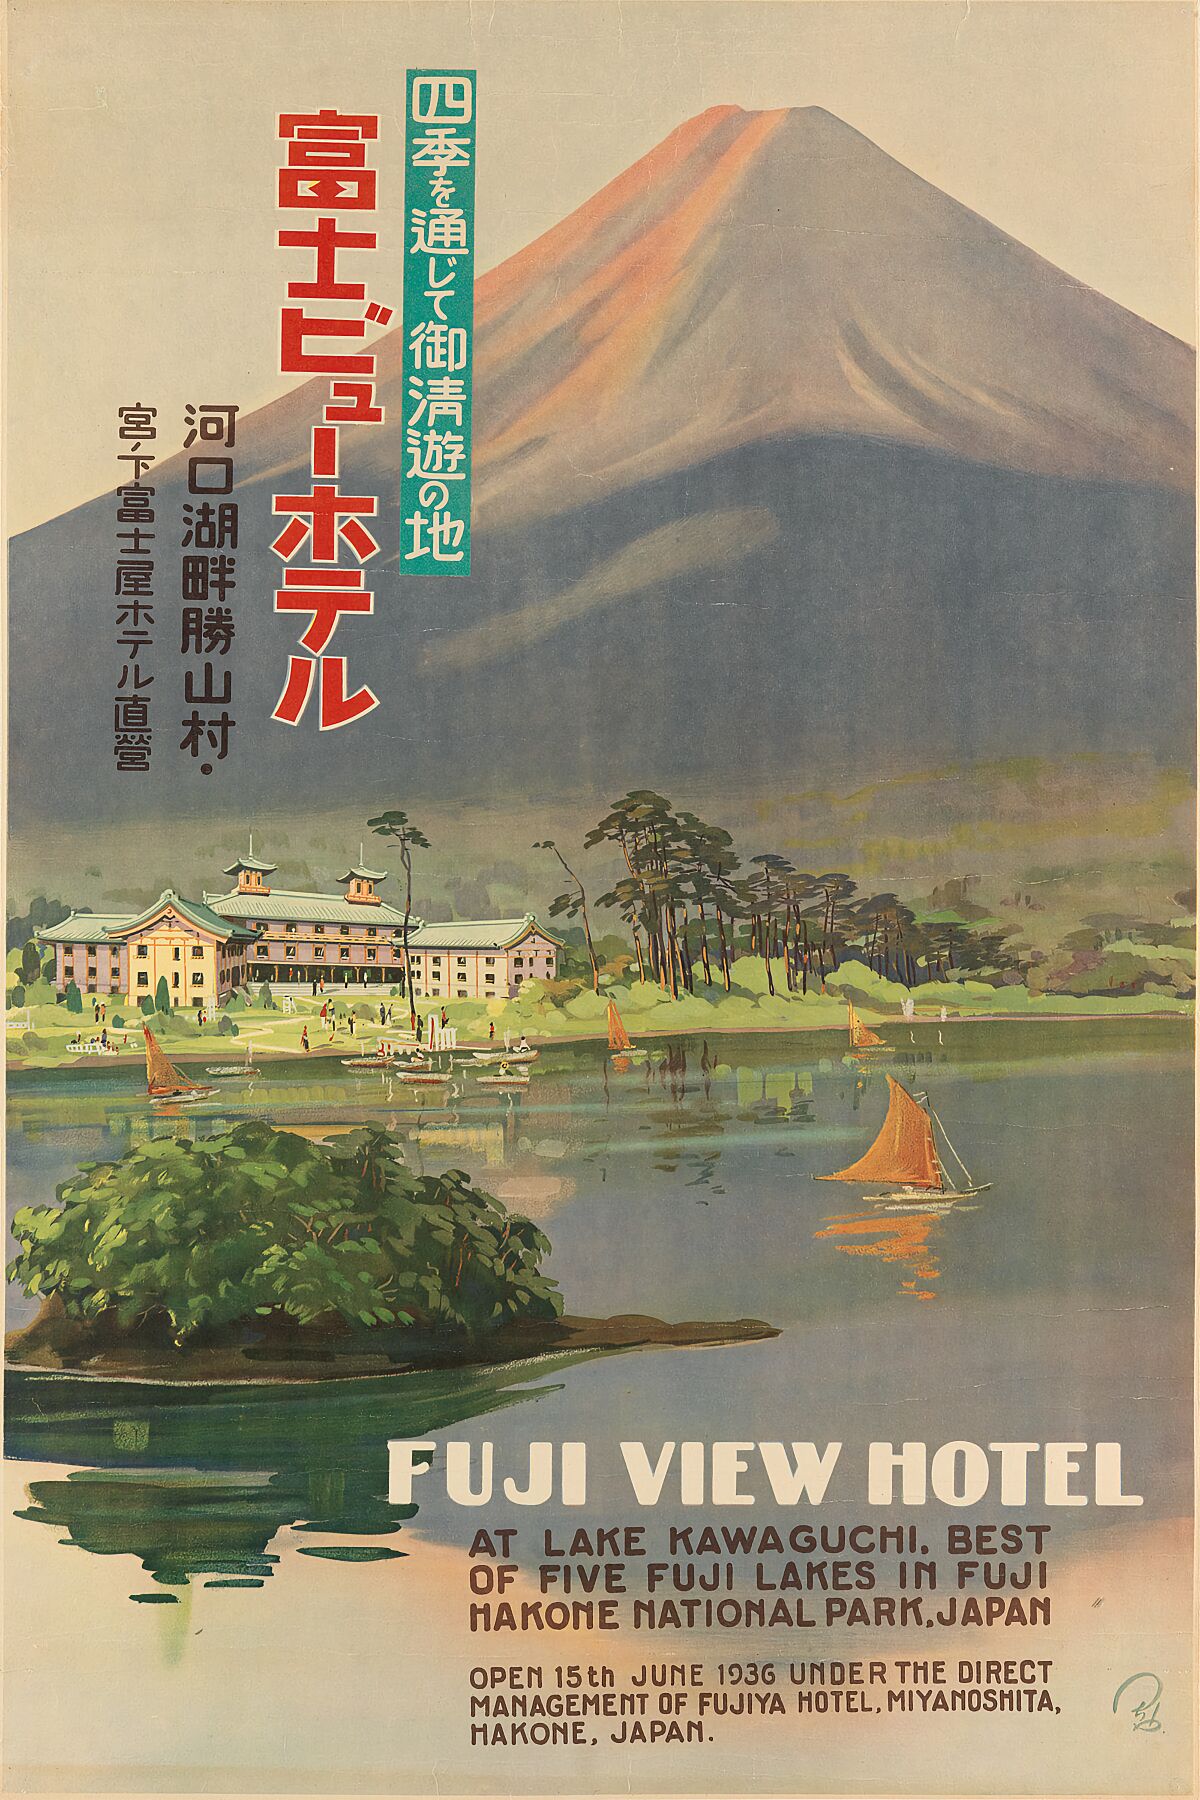 Fuji View Hotel - c. 1936.